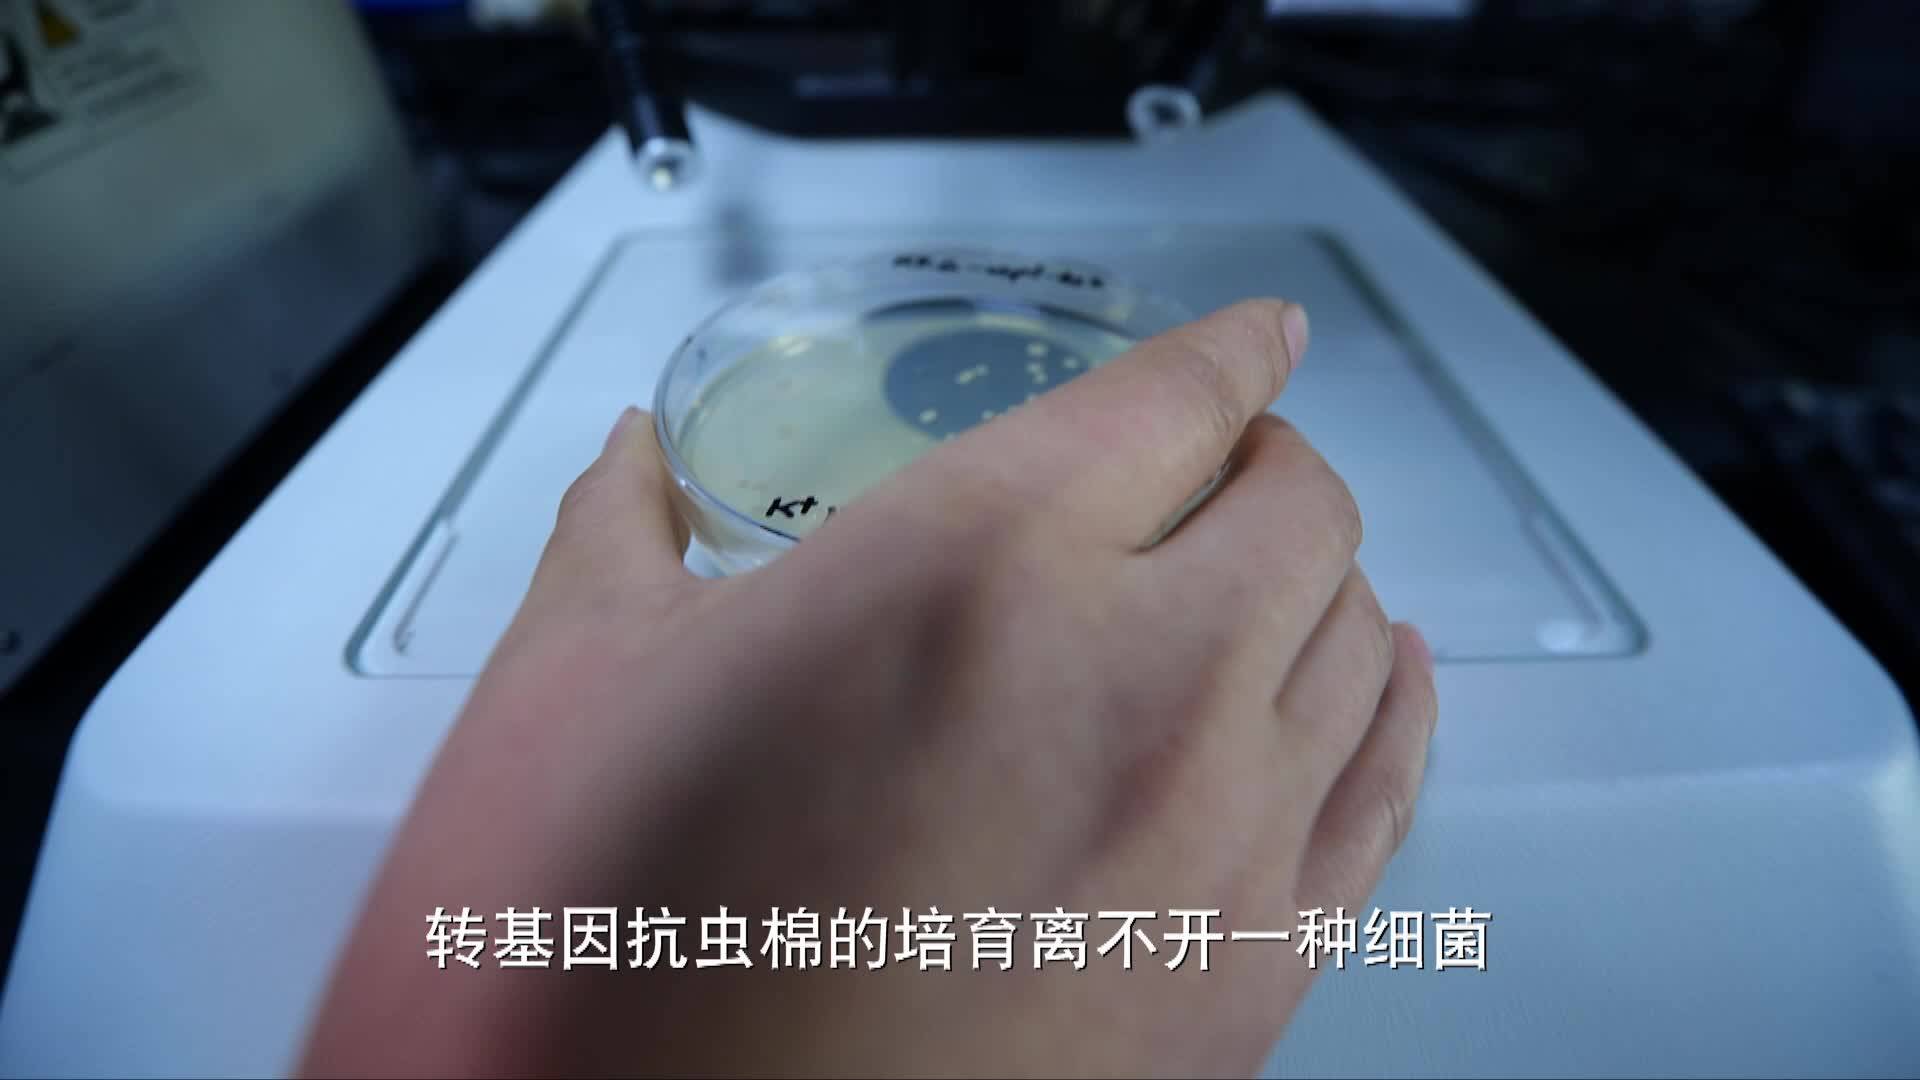 《我和转基因的故事》第一集:棉田“芯片”的创造者-郭三堆